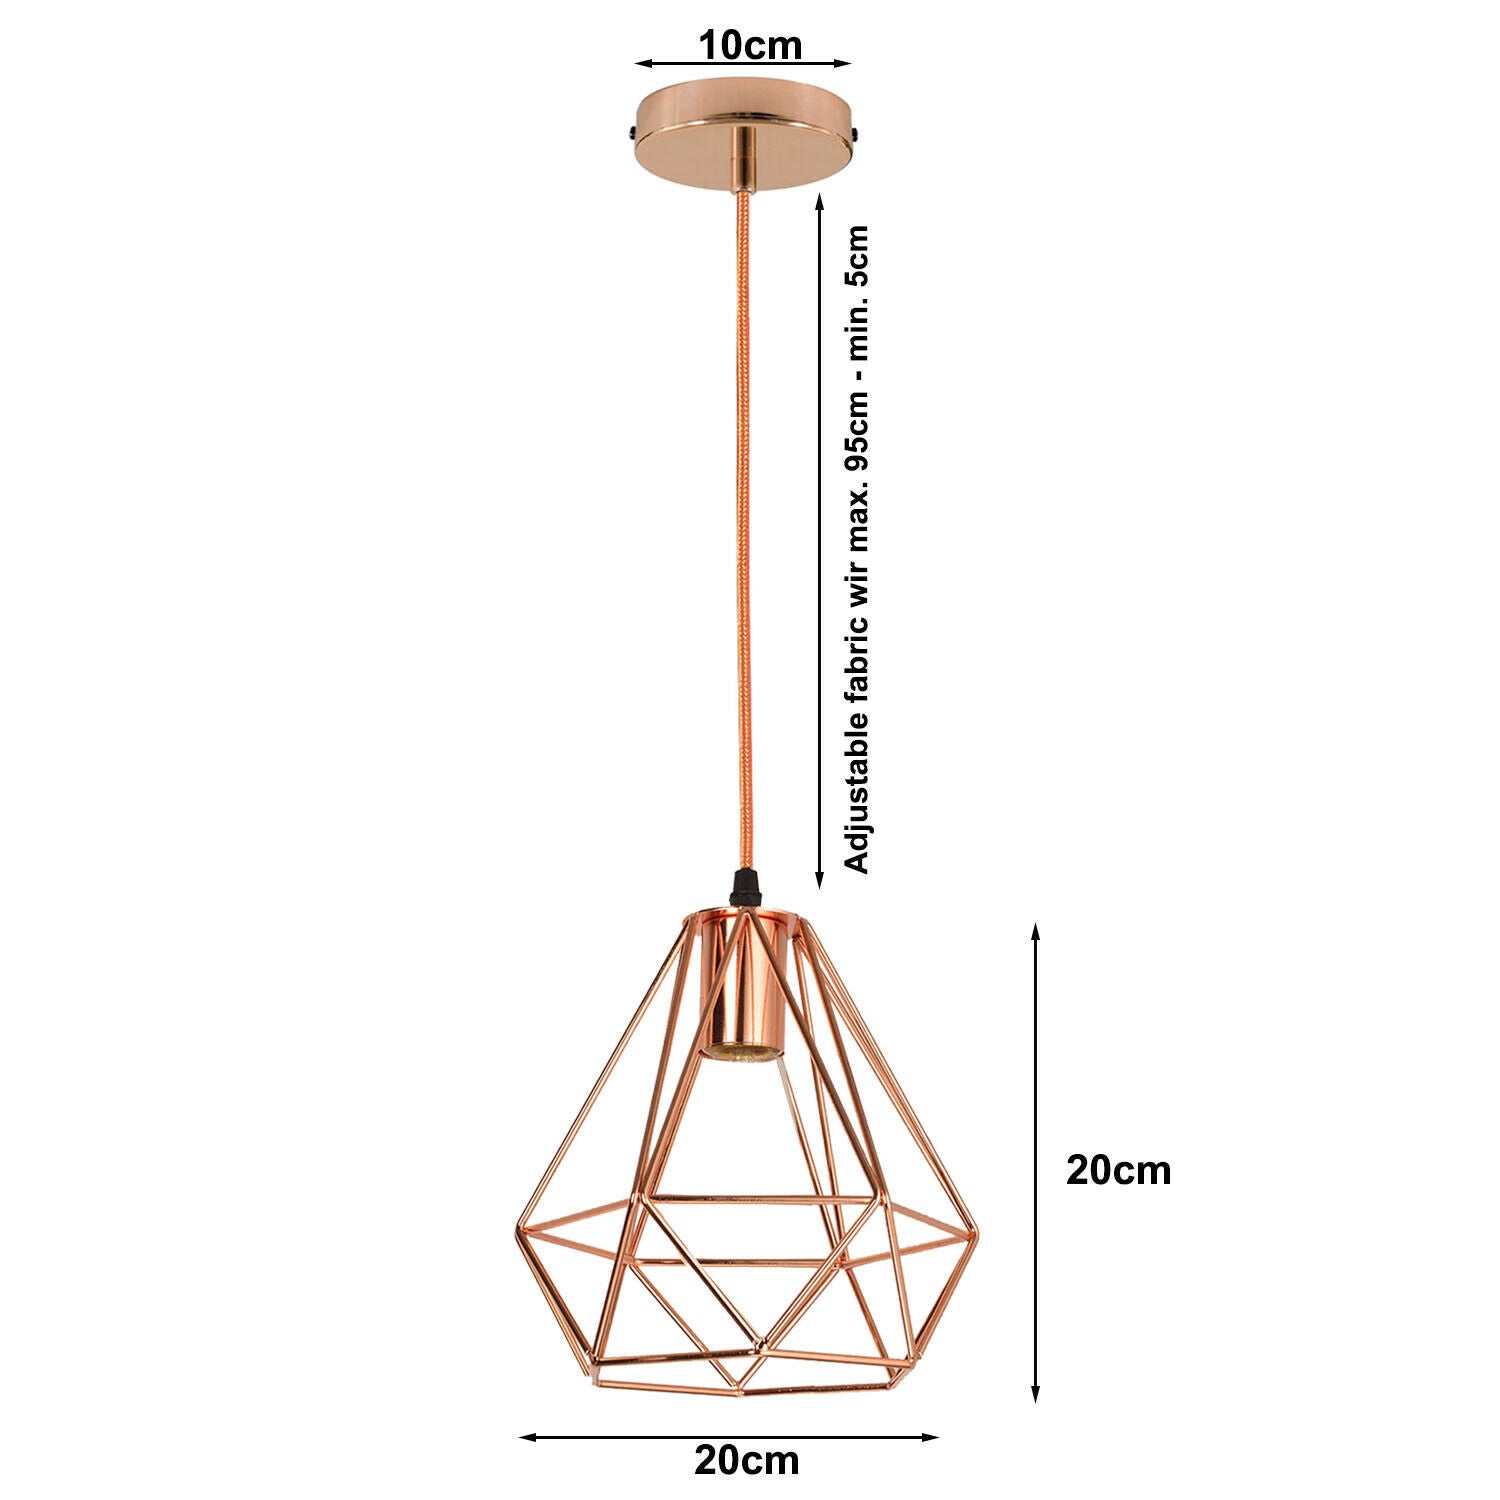 Rose Gold Industrial Metal Ceiling Hanging Pendant Light~1138 - LEDSone UK Ltd